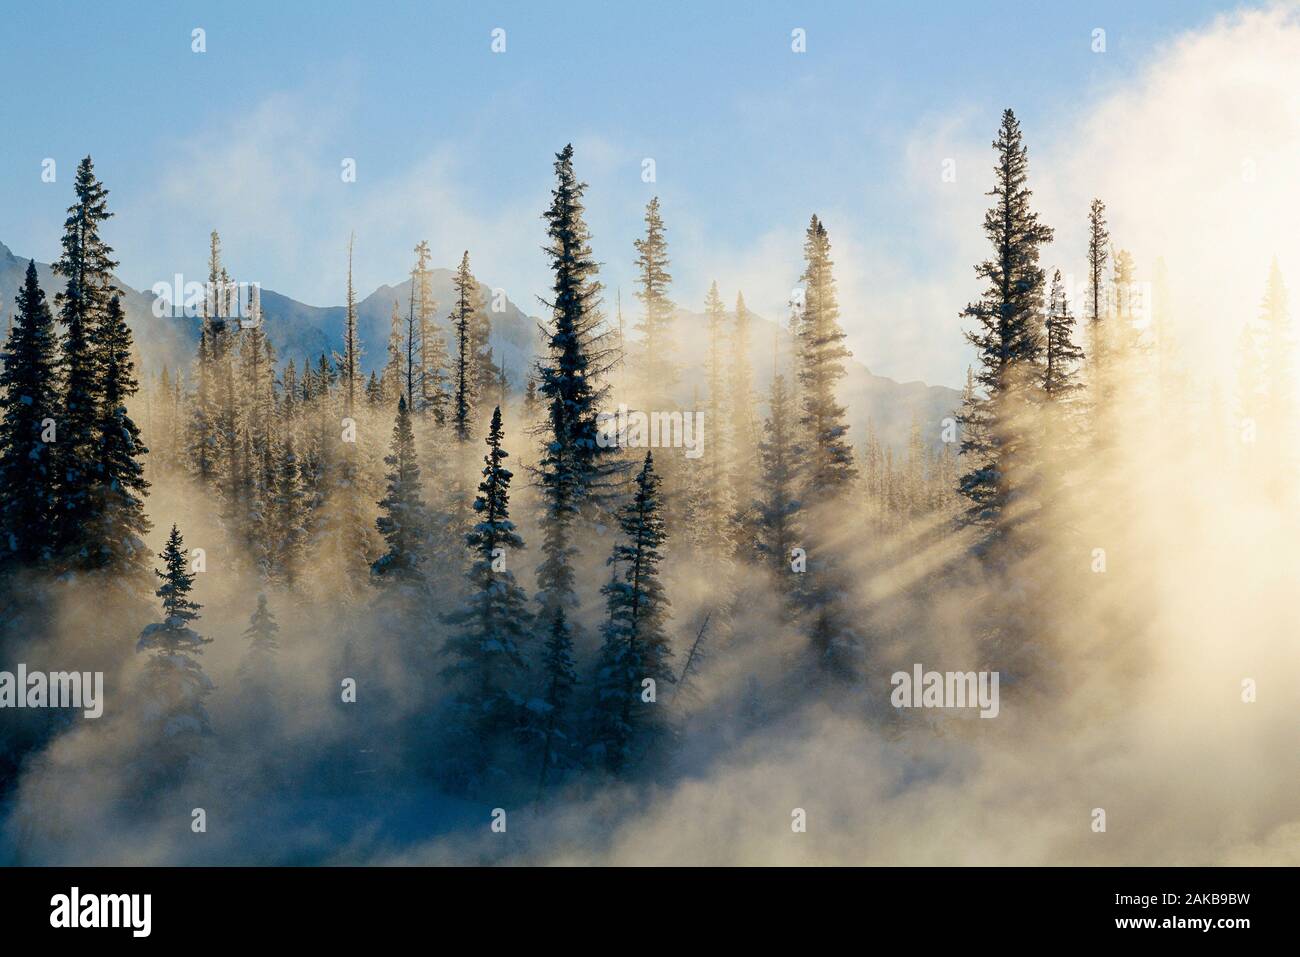 Paysage avec des forêts de conifères dans le brouillard au lever du soleil, Banff National Park, Alberta, Canada Banque D'Images